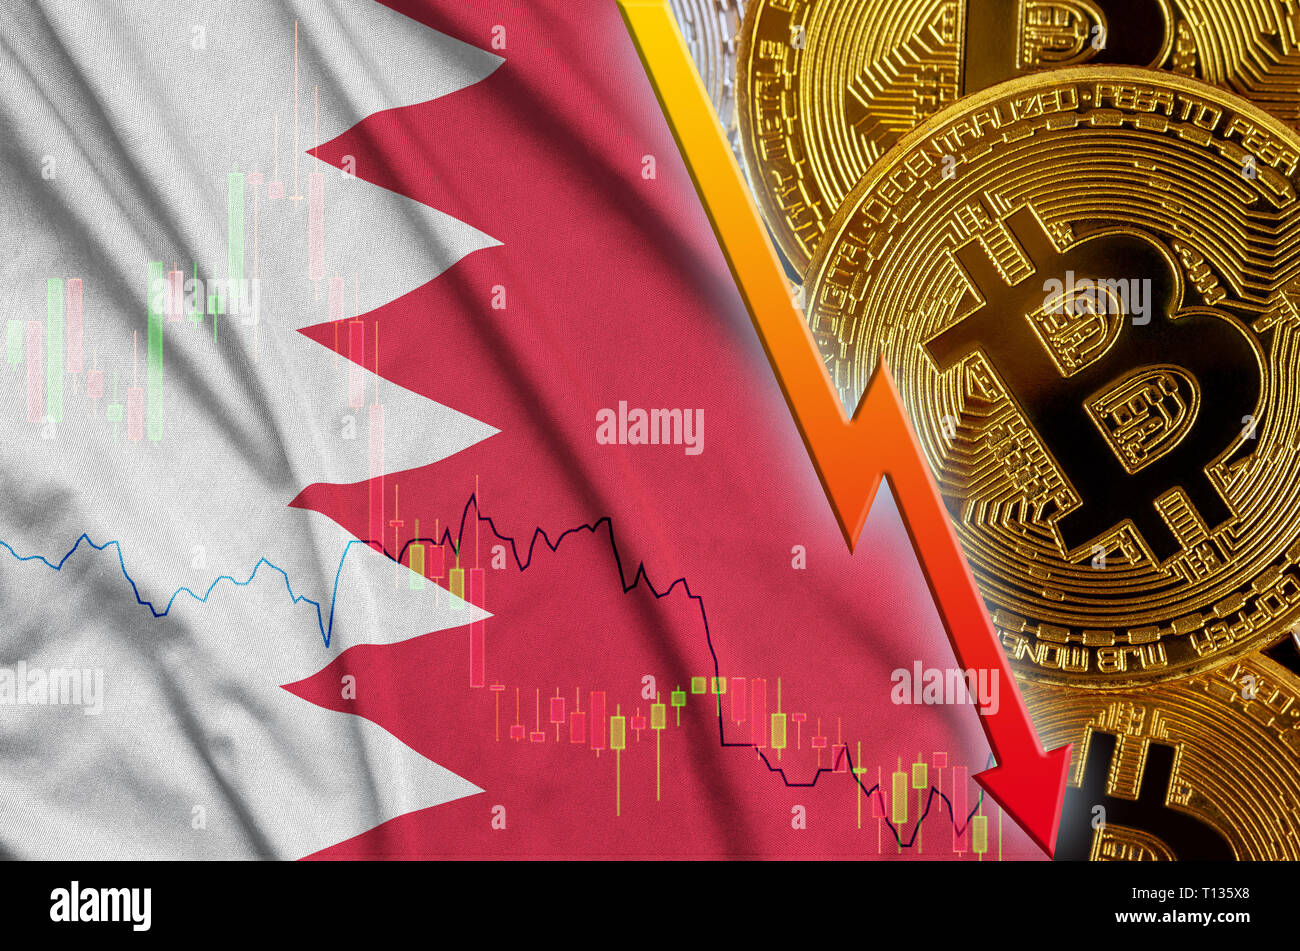 Drapeau de Bahreïn et cryptocurrency baisse avec de nombreux bitcoins d'or. Concept de Bitcoin réduction de prix ou de mauvaise conversion dans cryptocurrency min Banque D'Images